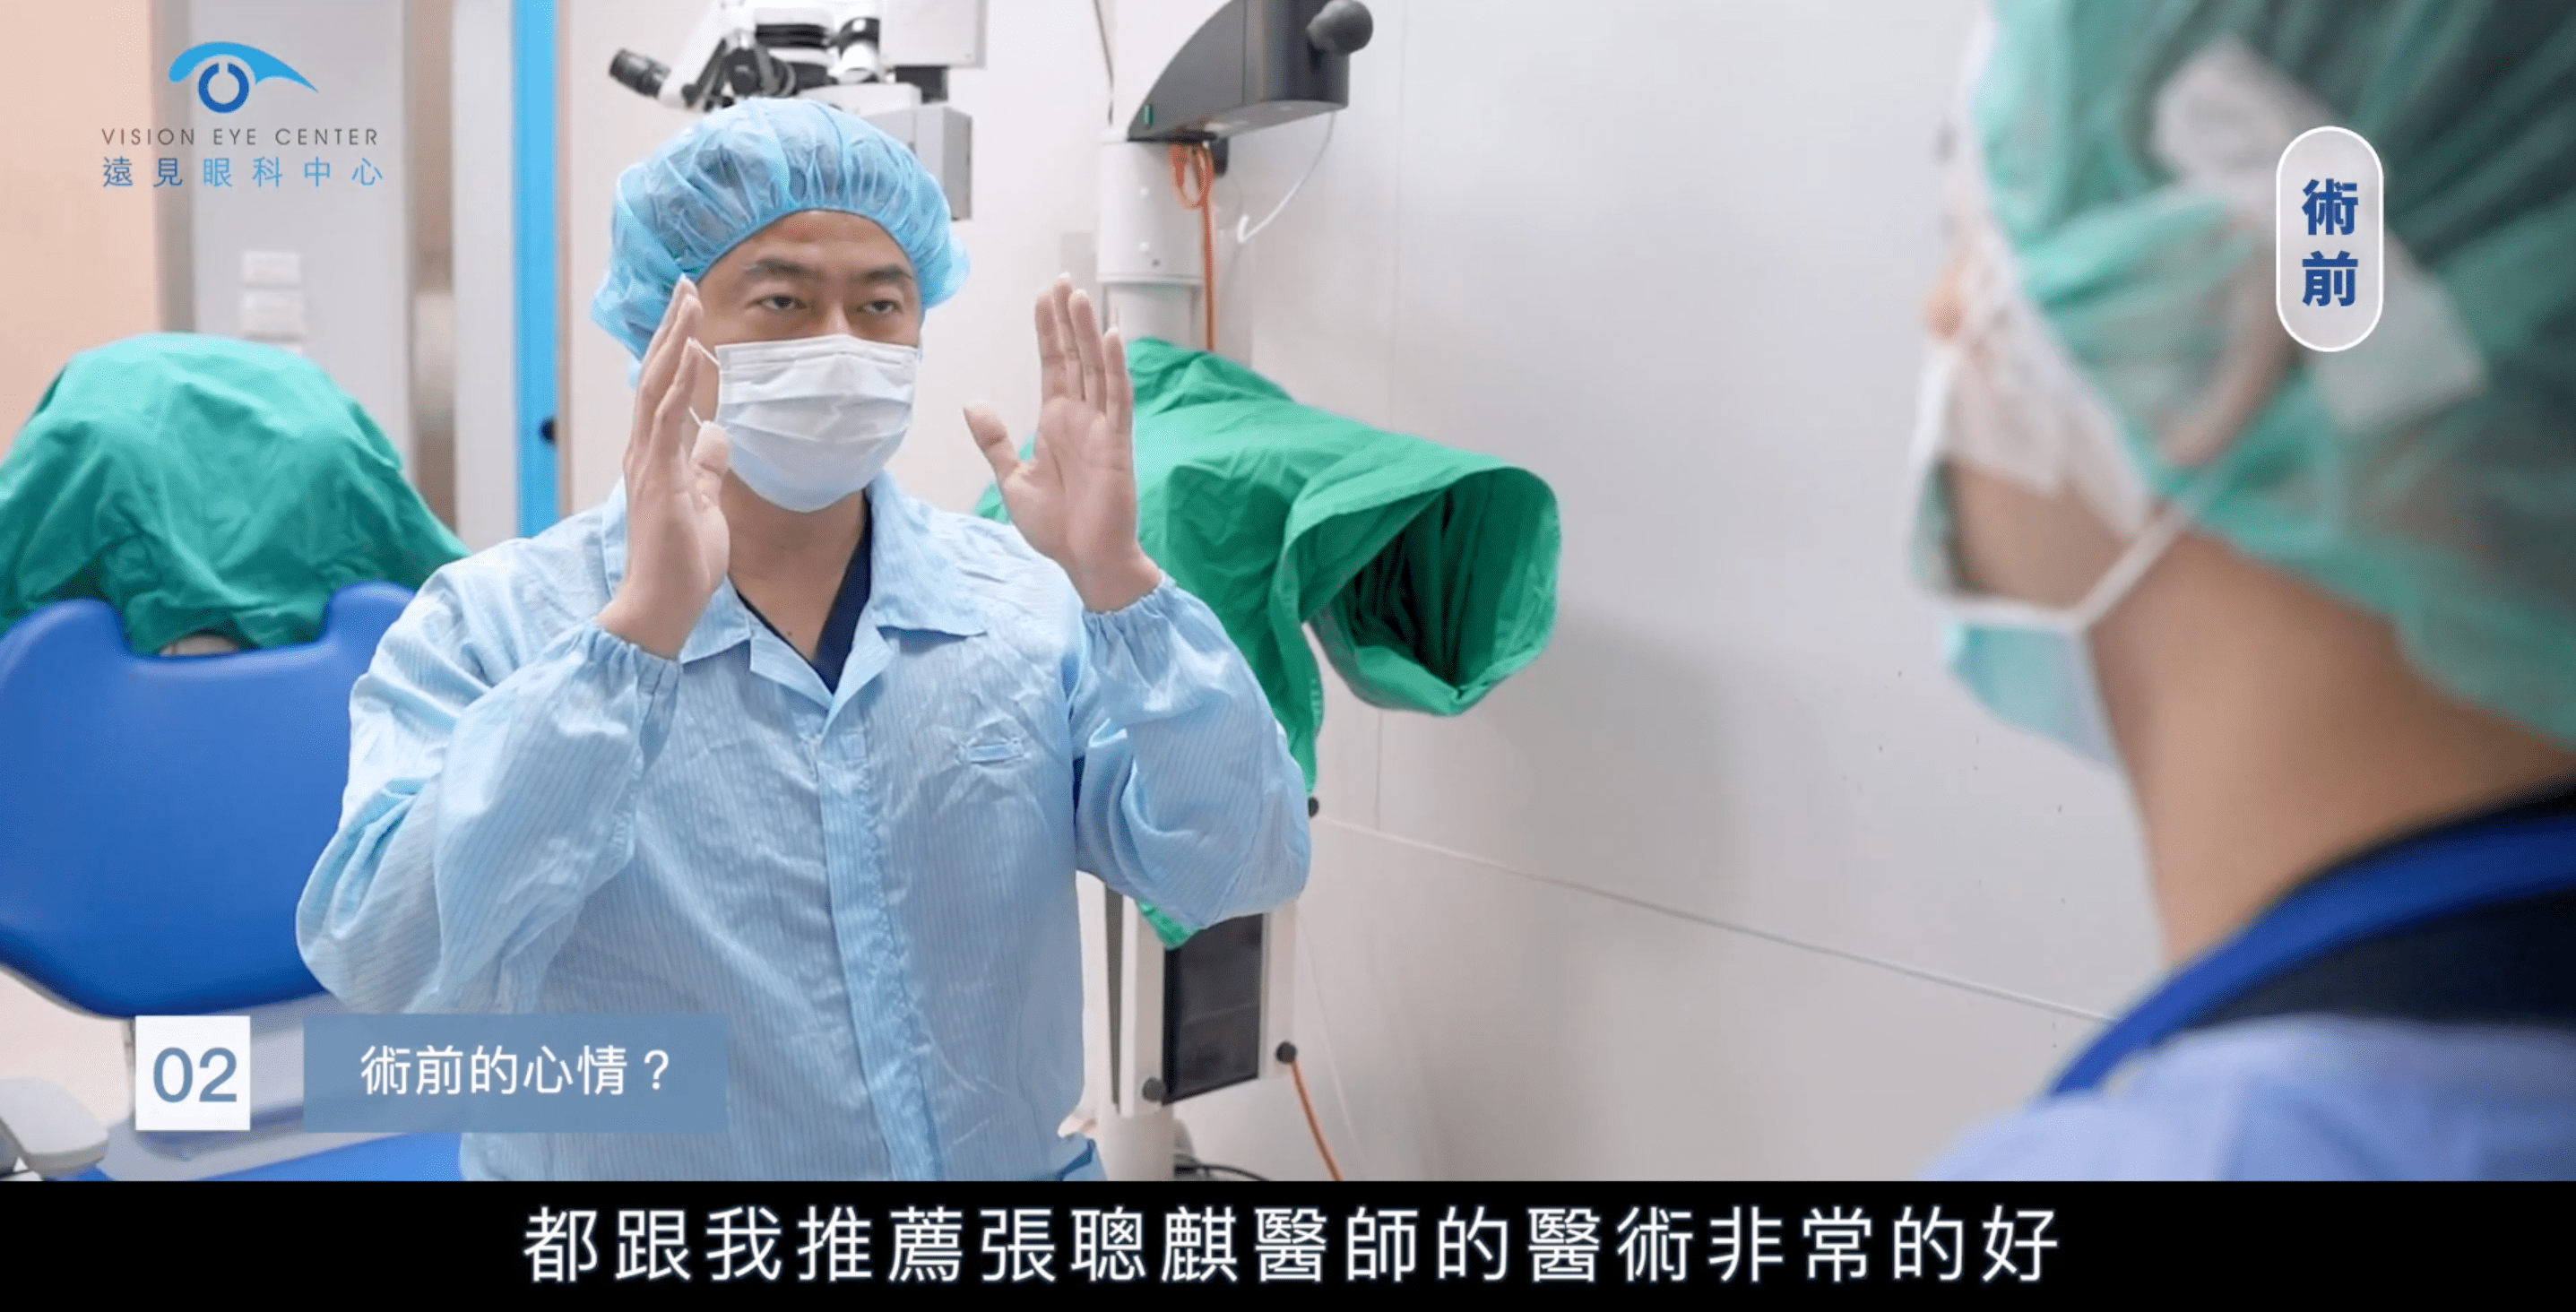 張聰麒醫師為朱芃年醫師進行近視雷射術前解說